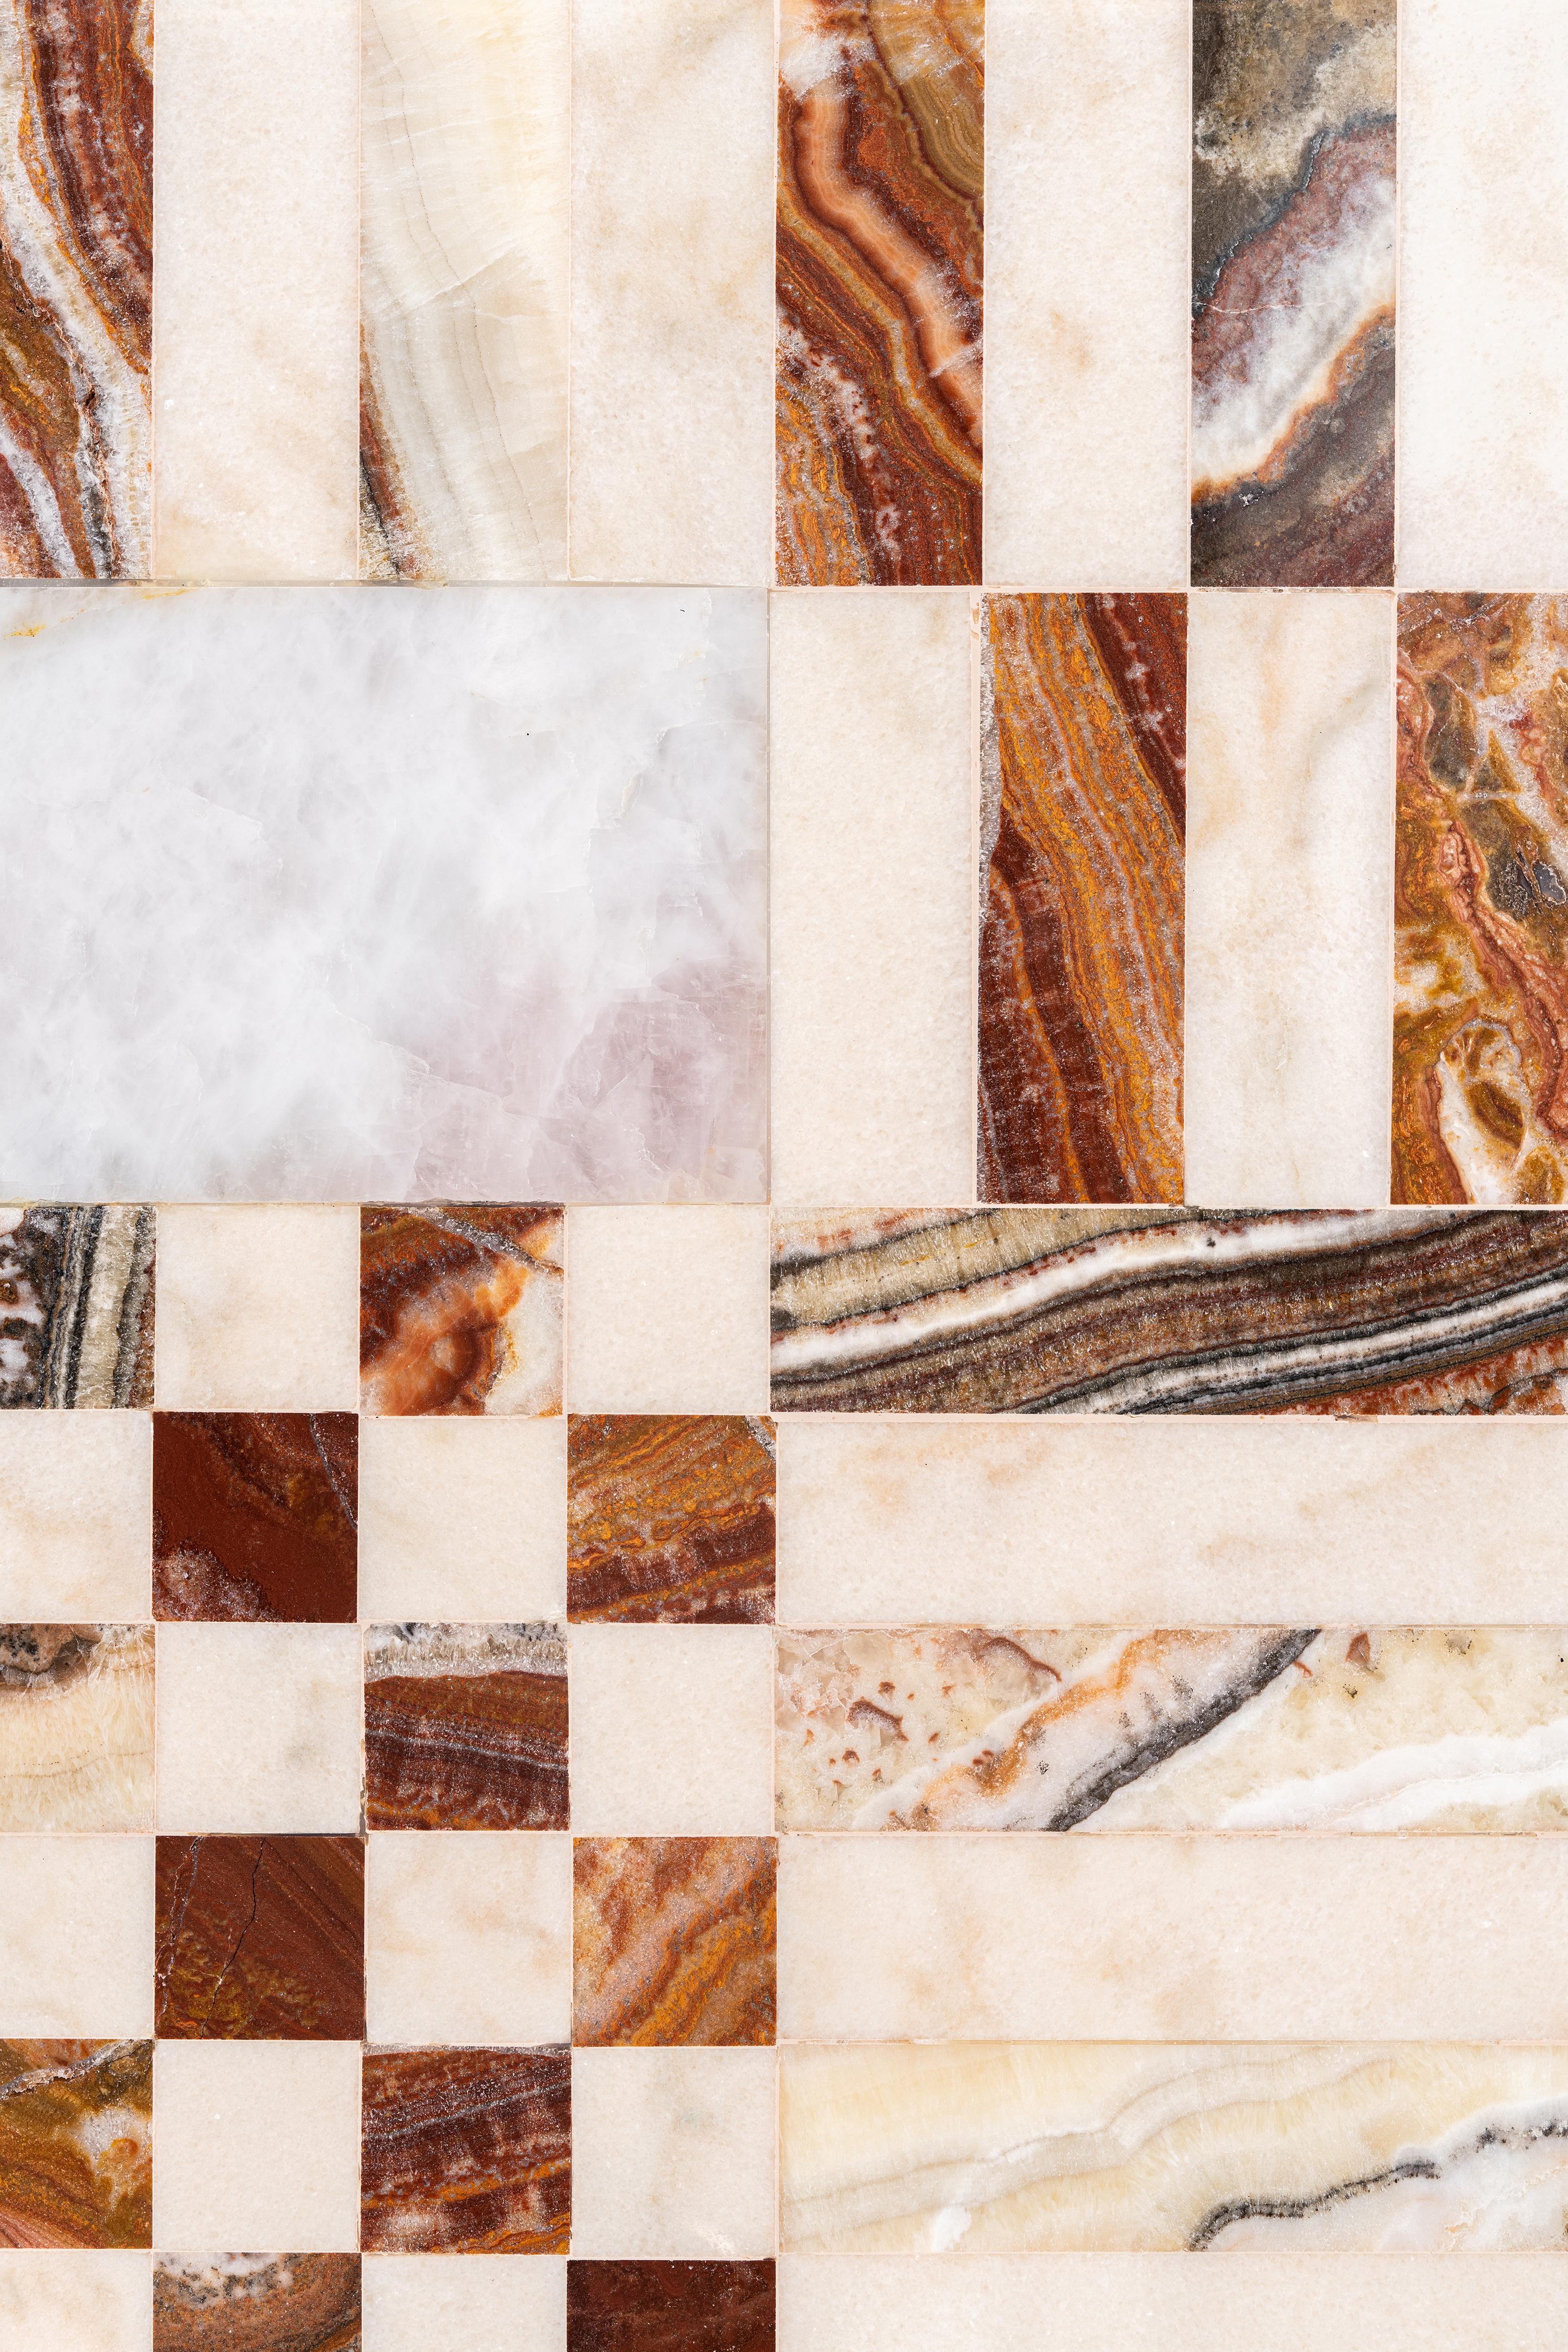 Une superposition ludique et graphique de motifs en marbre qui illustre parfaitement l'esthétique d'ALTIS. Les teintes des blushes et des bourgognes se reflètent parmi les marbres, le coton tissé à la main et le cuivre qui constituent l'union